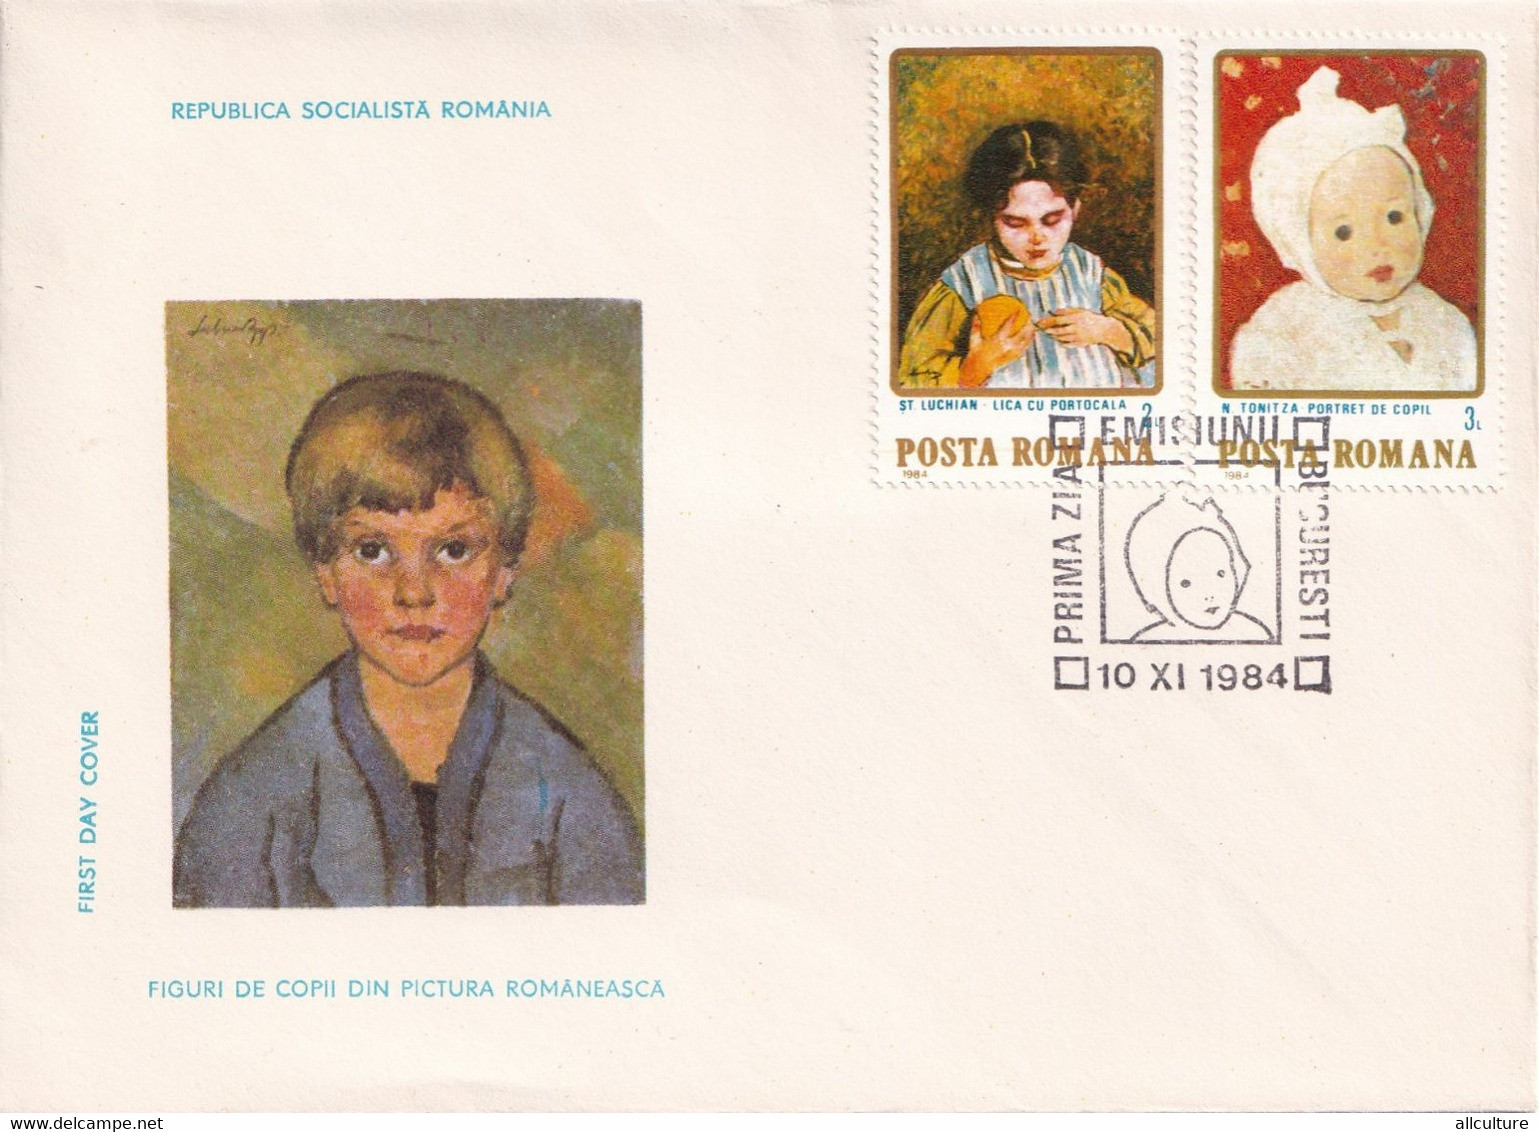 A2652 - Figuri De Copii Din Pictura Romaneasca, Republica Socialista Romania, Bucuresti 1984 3 Covers  FDC - FDC